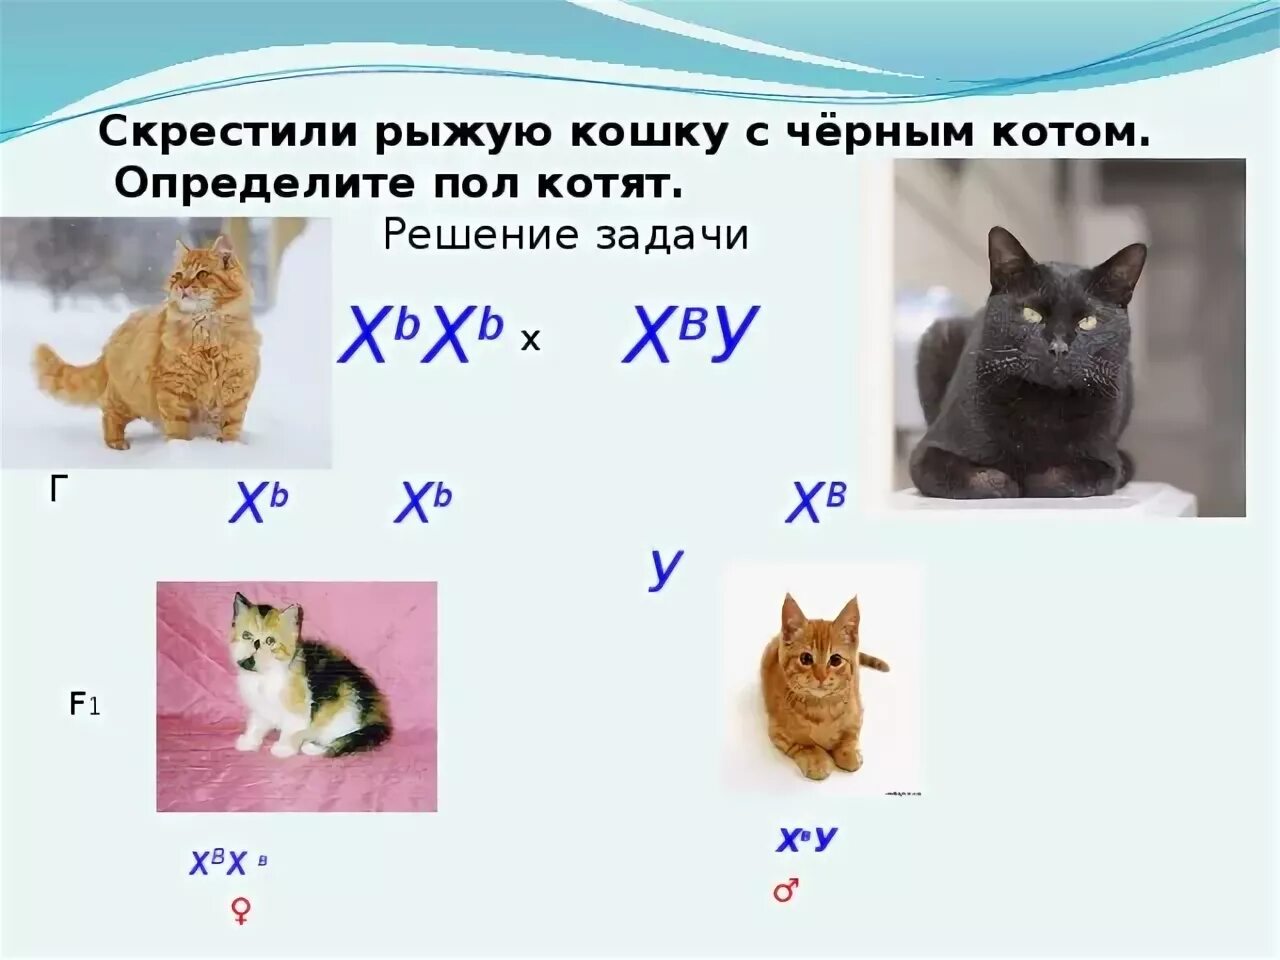 Наследование окраски шерсти у кошек. Схема скрещивания кошки. Скрещивание рыжей кошки и черного кота. Генетика котята.